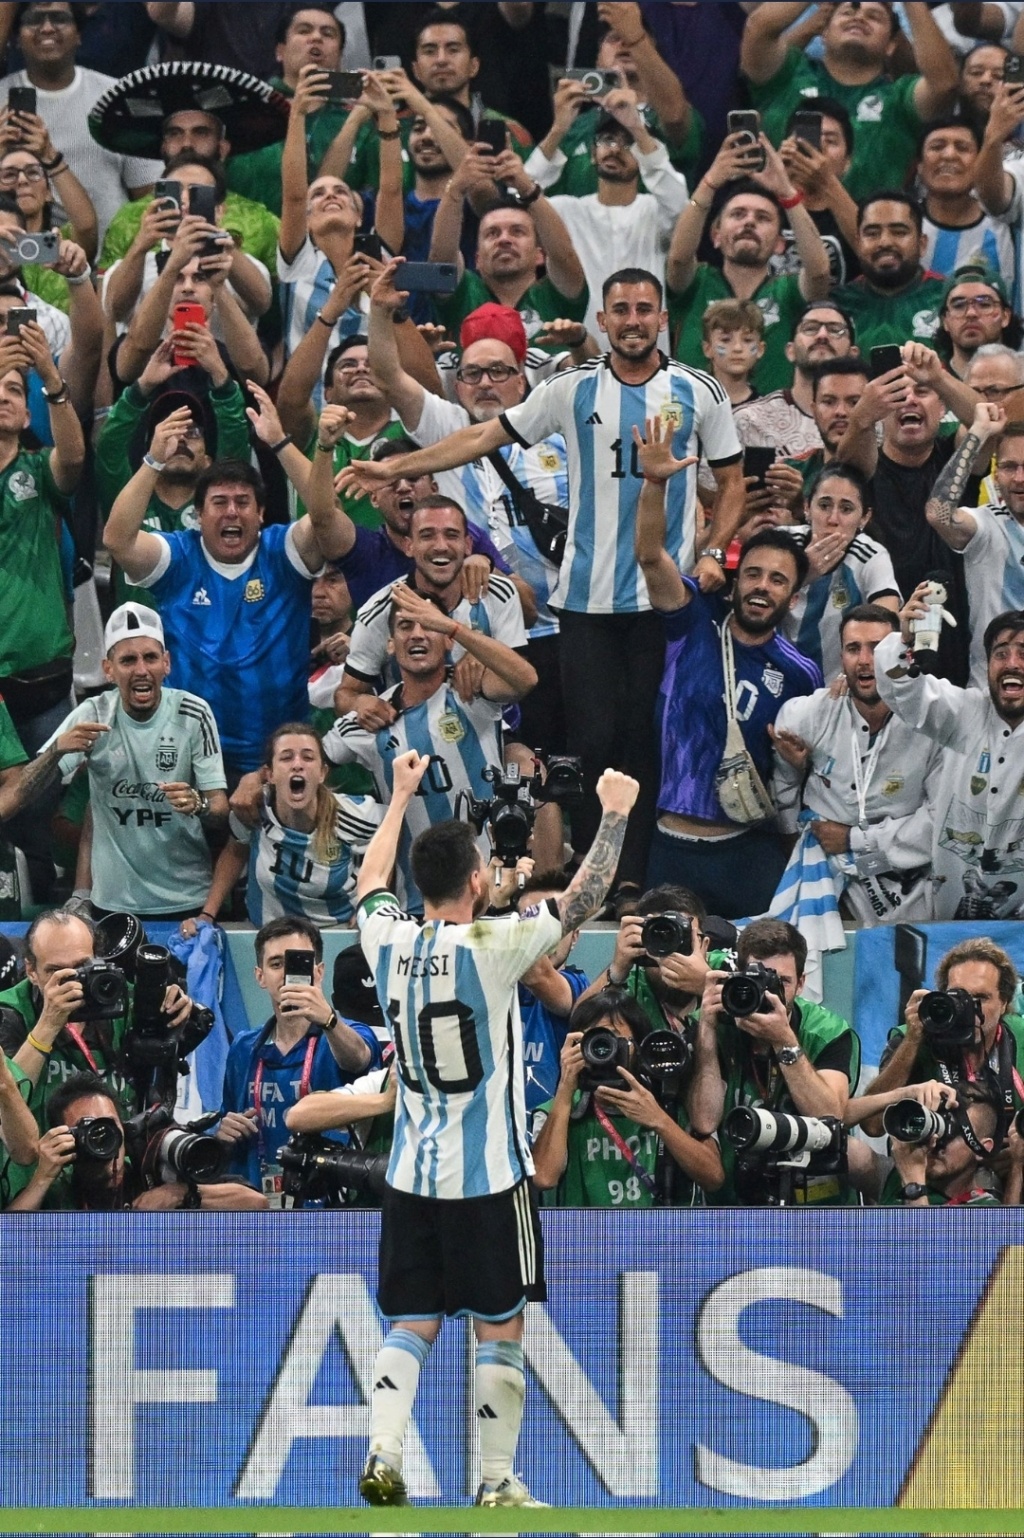 Vamos, vamos, Argentina. Esa Copa linda y deseada - Página 7 Scree335